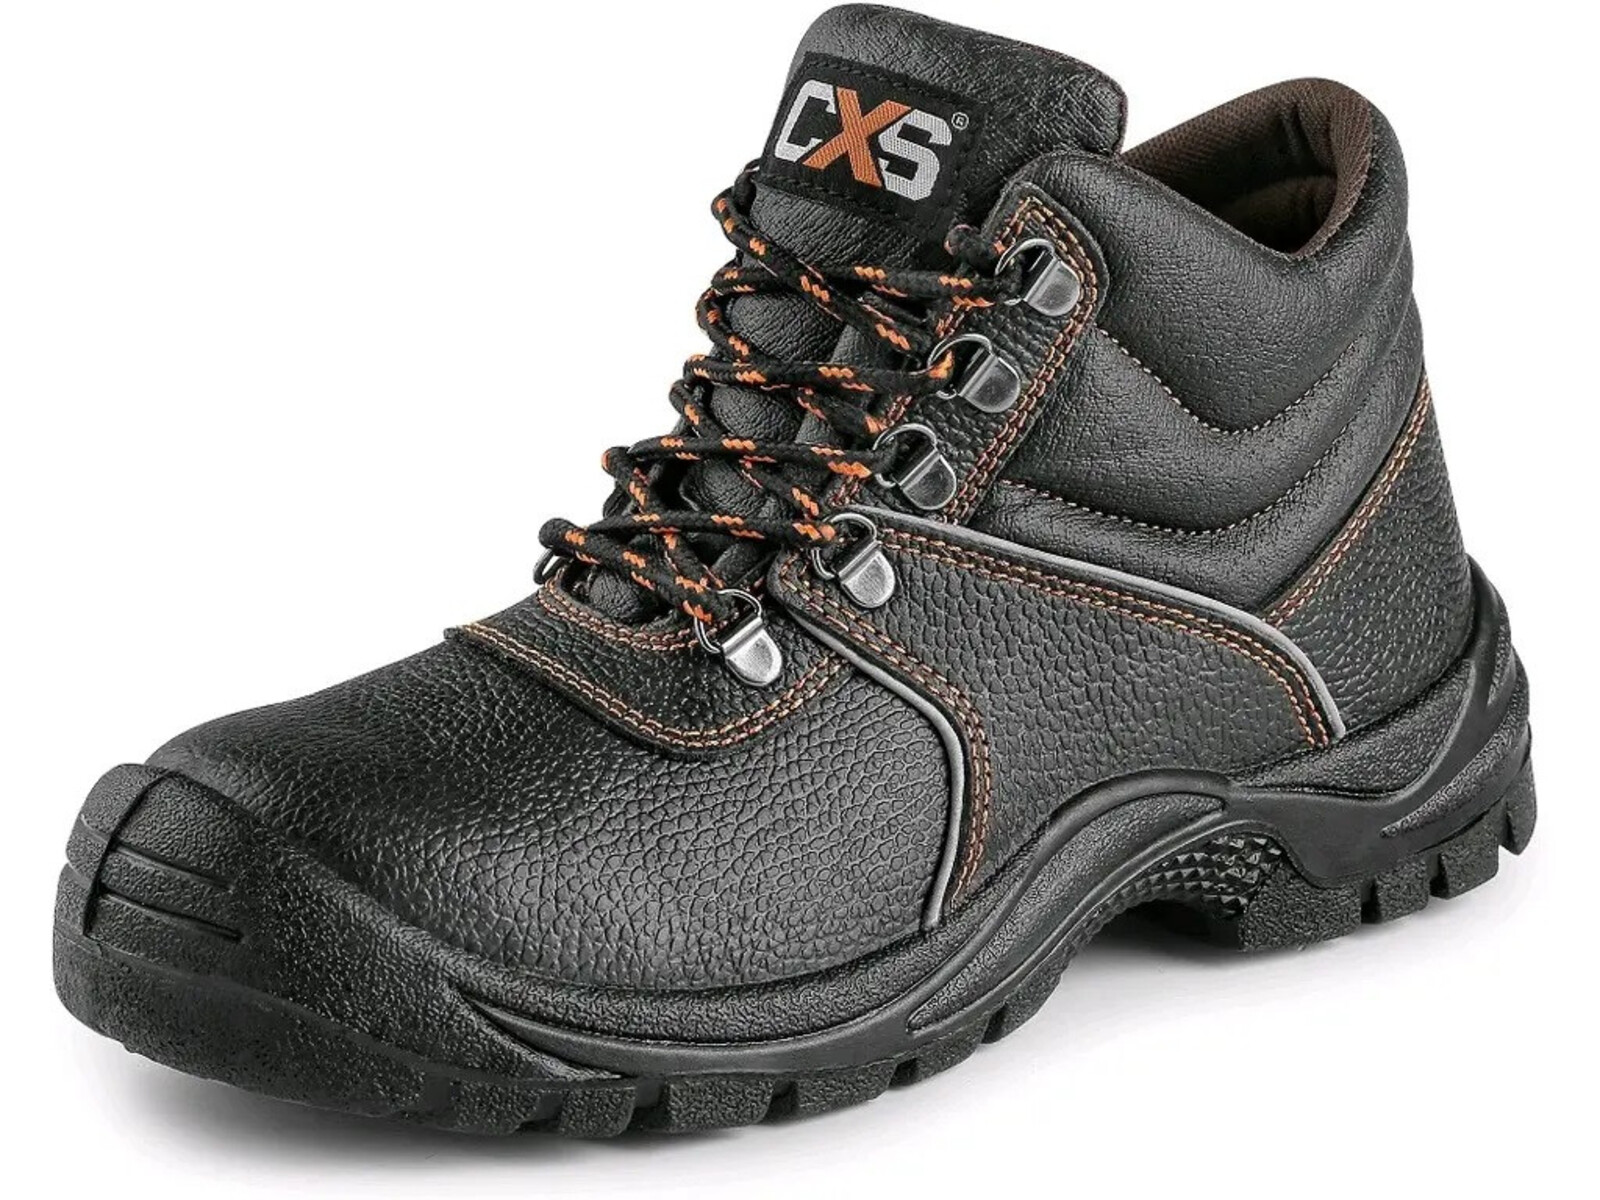 Bezpečnostná členková obuv CXS Stone Marble S3 SRC - veľkosť: 42, farba: čierna/oranžová